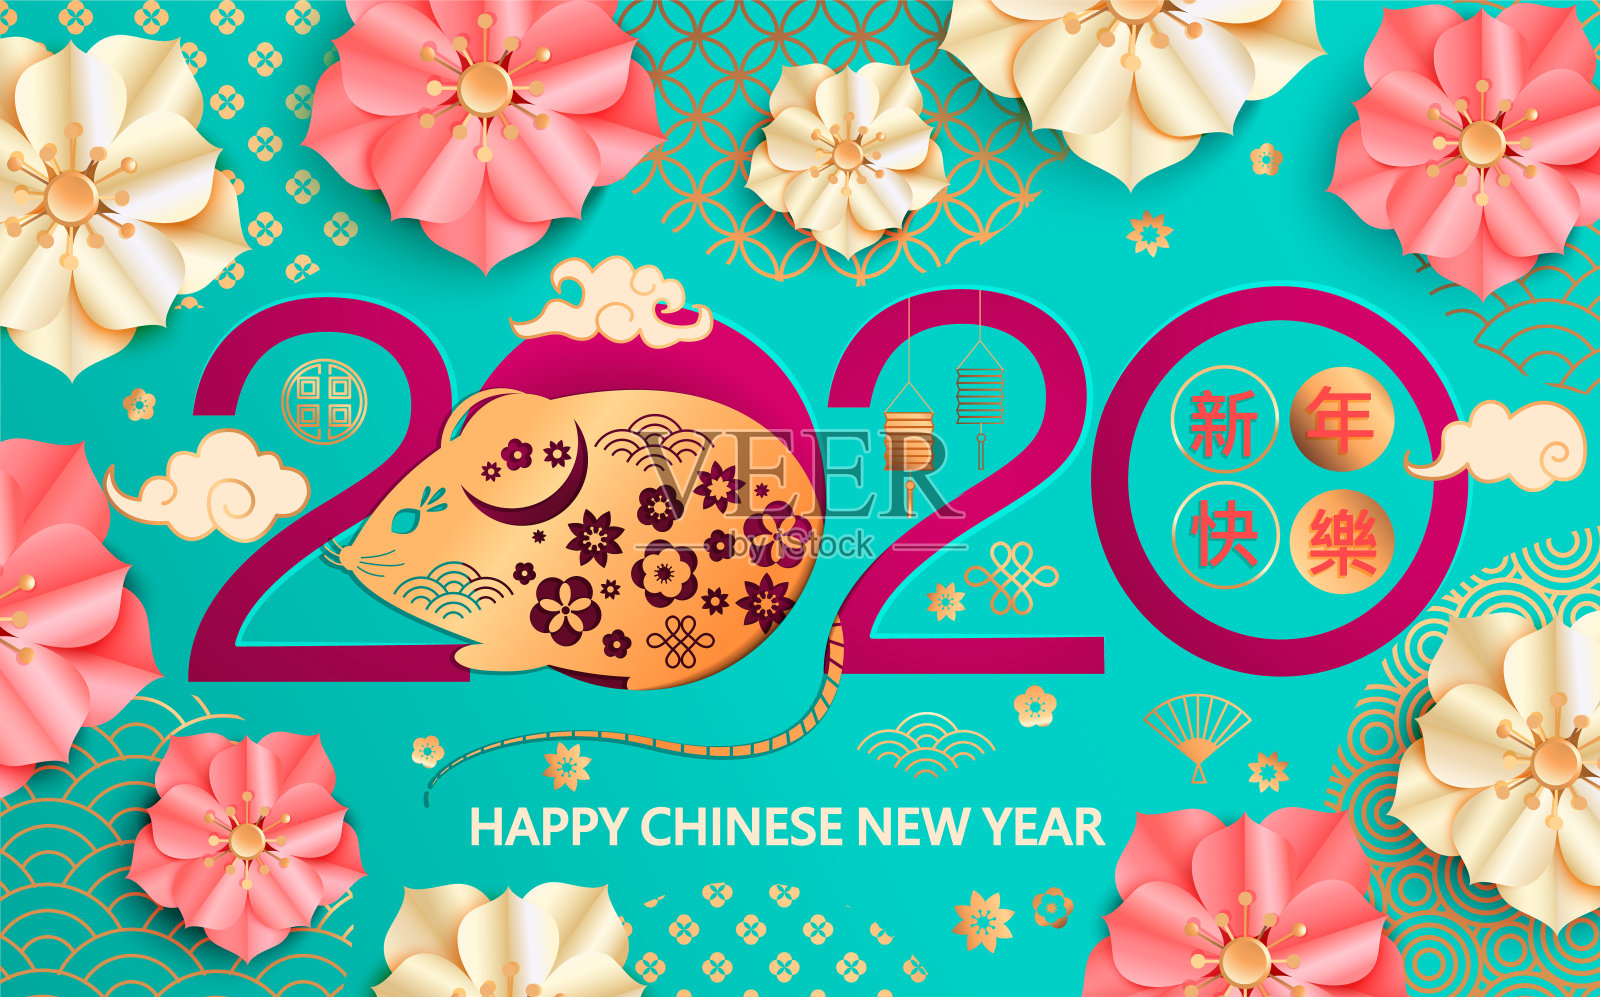 2020年中国新年金鼠卡。设计模板素材